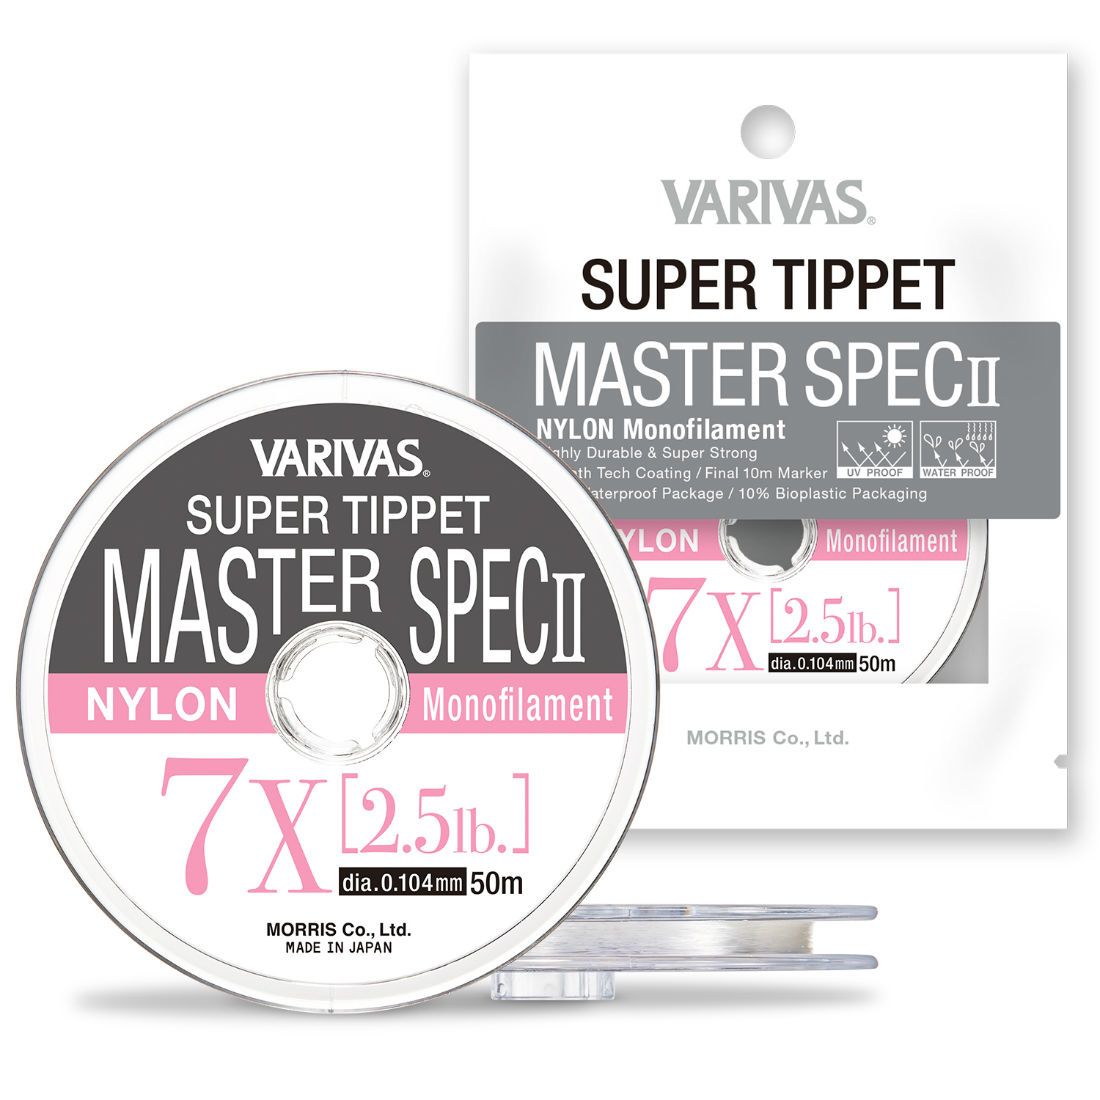 FIR SUPER TIPPET MASTER SPEC ll NYLON 6X 50m 0.128mm 3.5lb